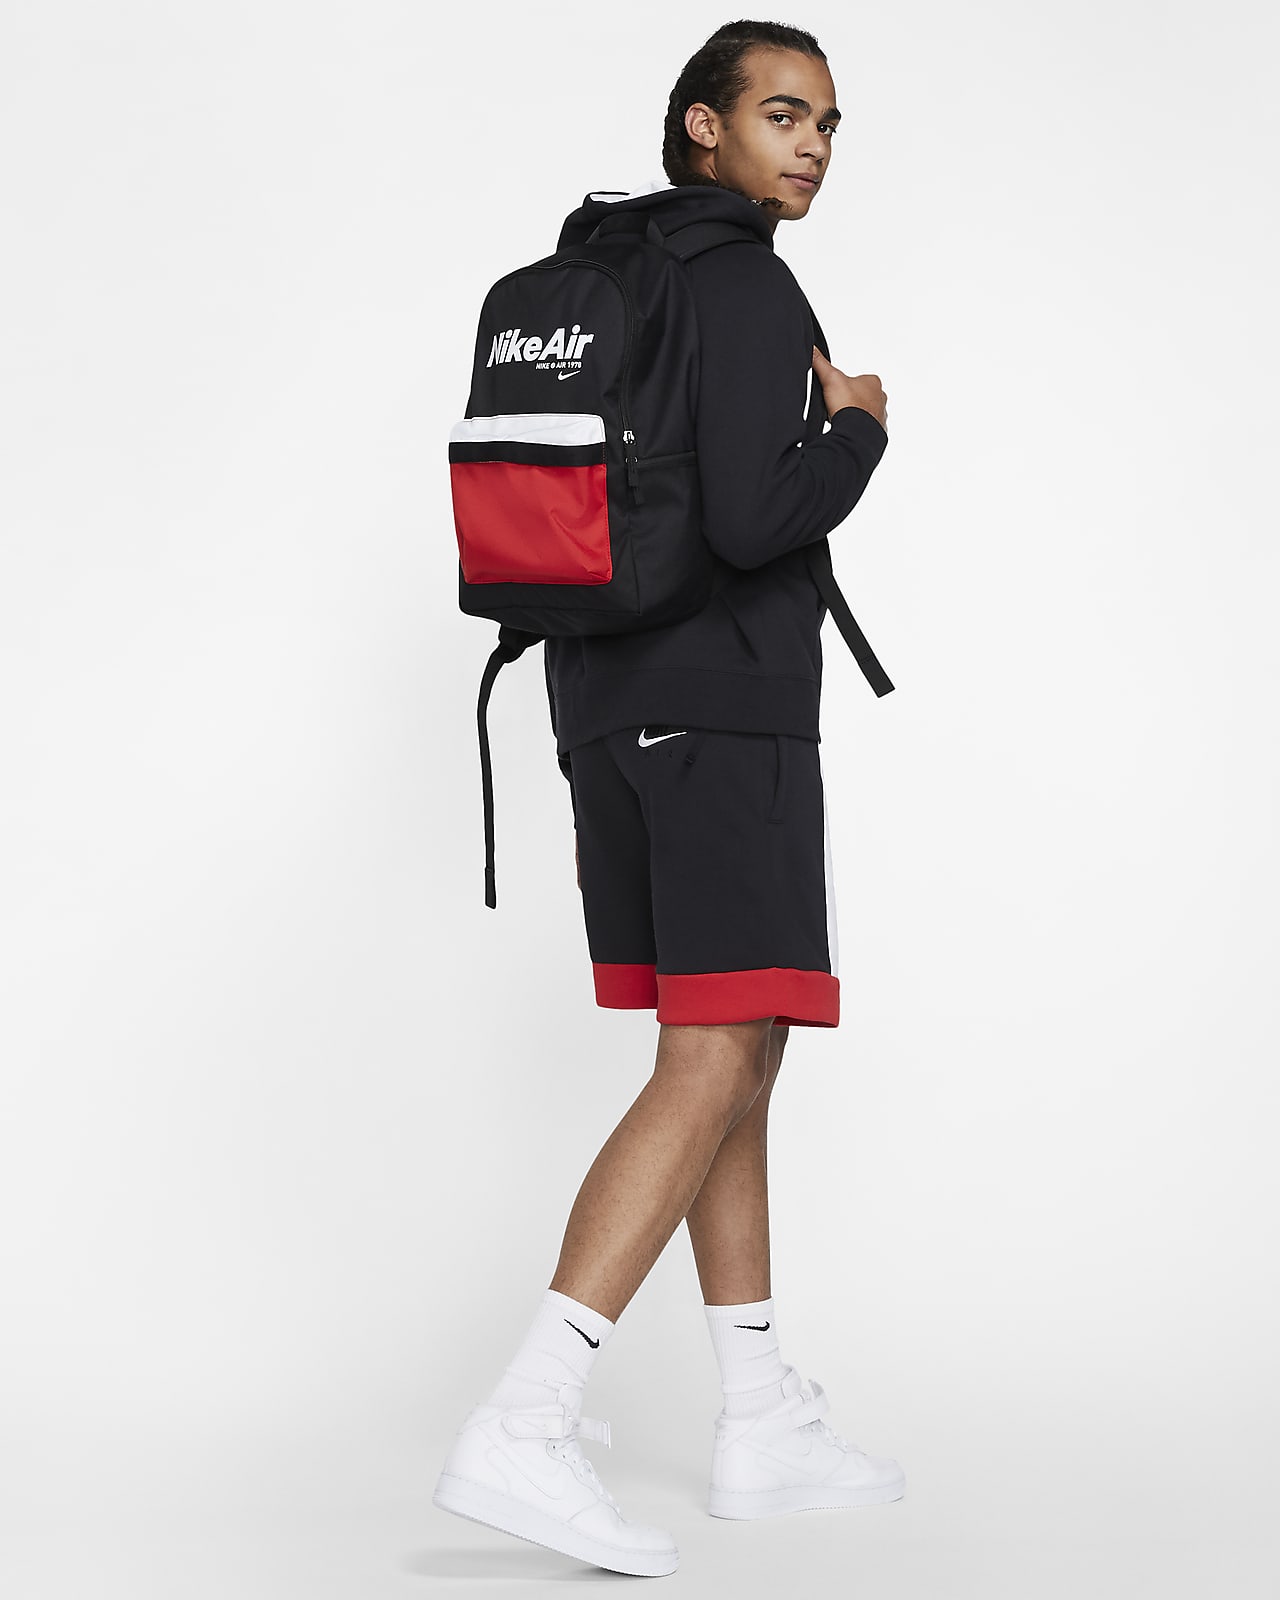 Nike Air Heritage 2.0 Backpack. Nike ID